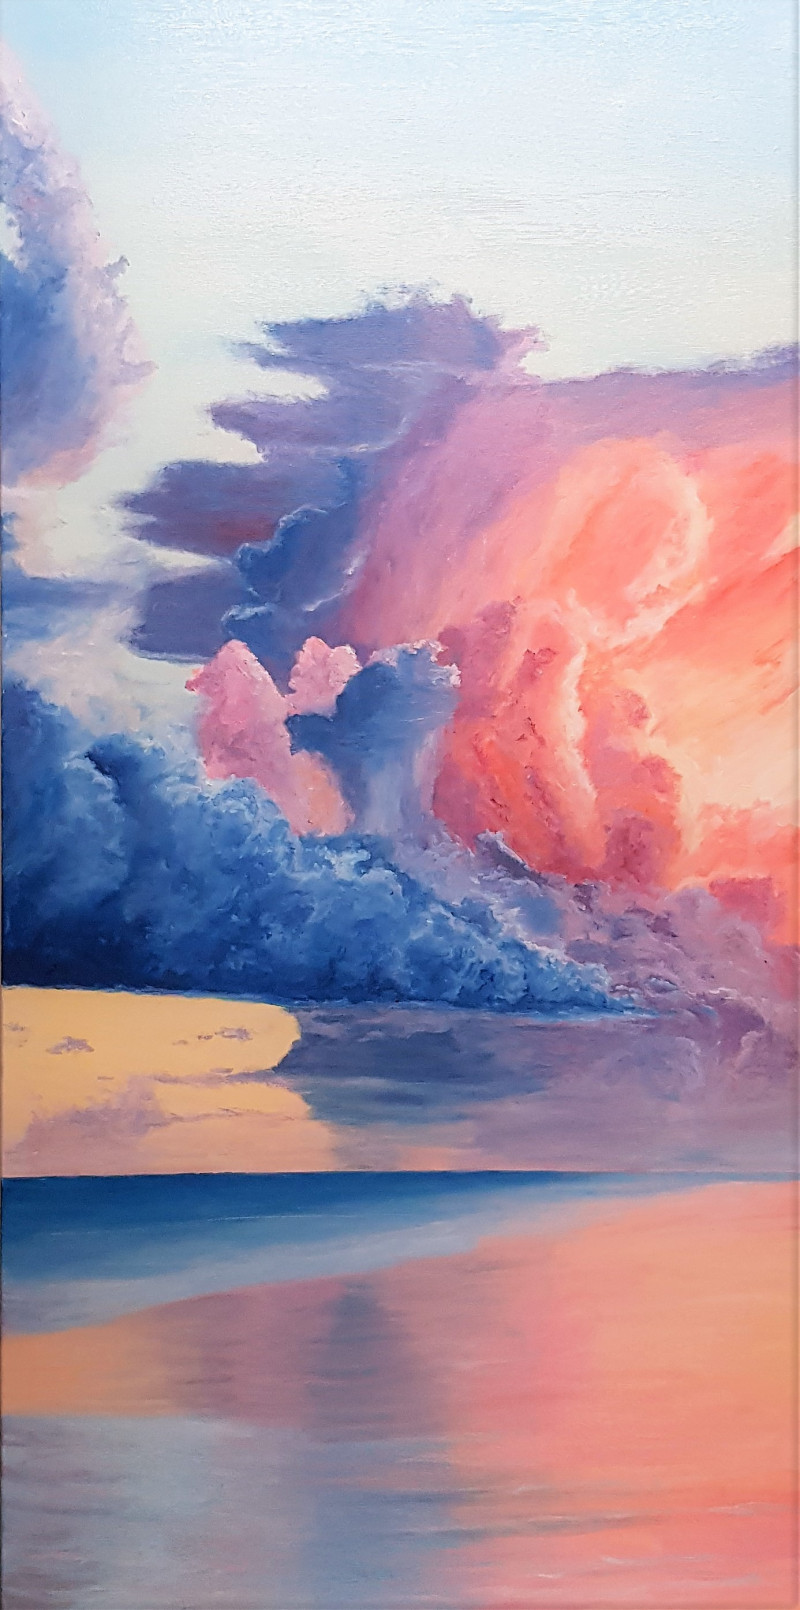 Mantas Naulickas tapytas paveikslas Degantis dangus, Peizažai , paveikslai internetu